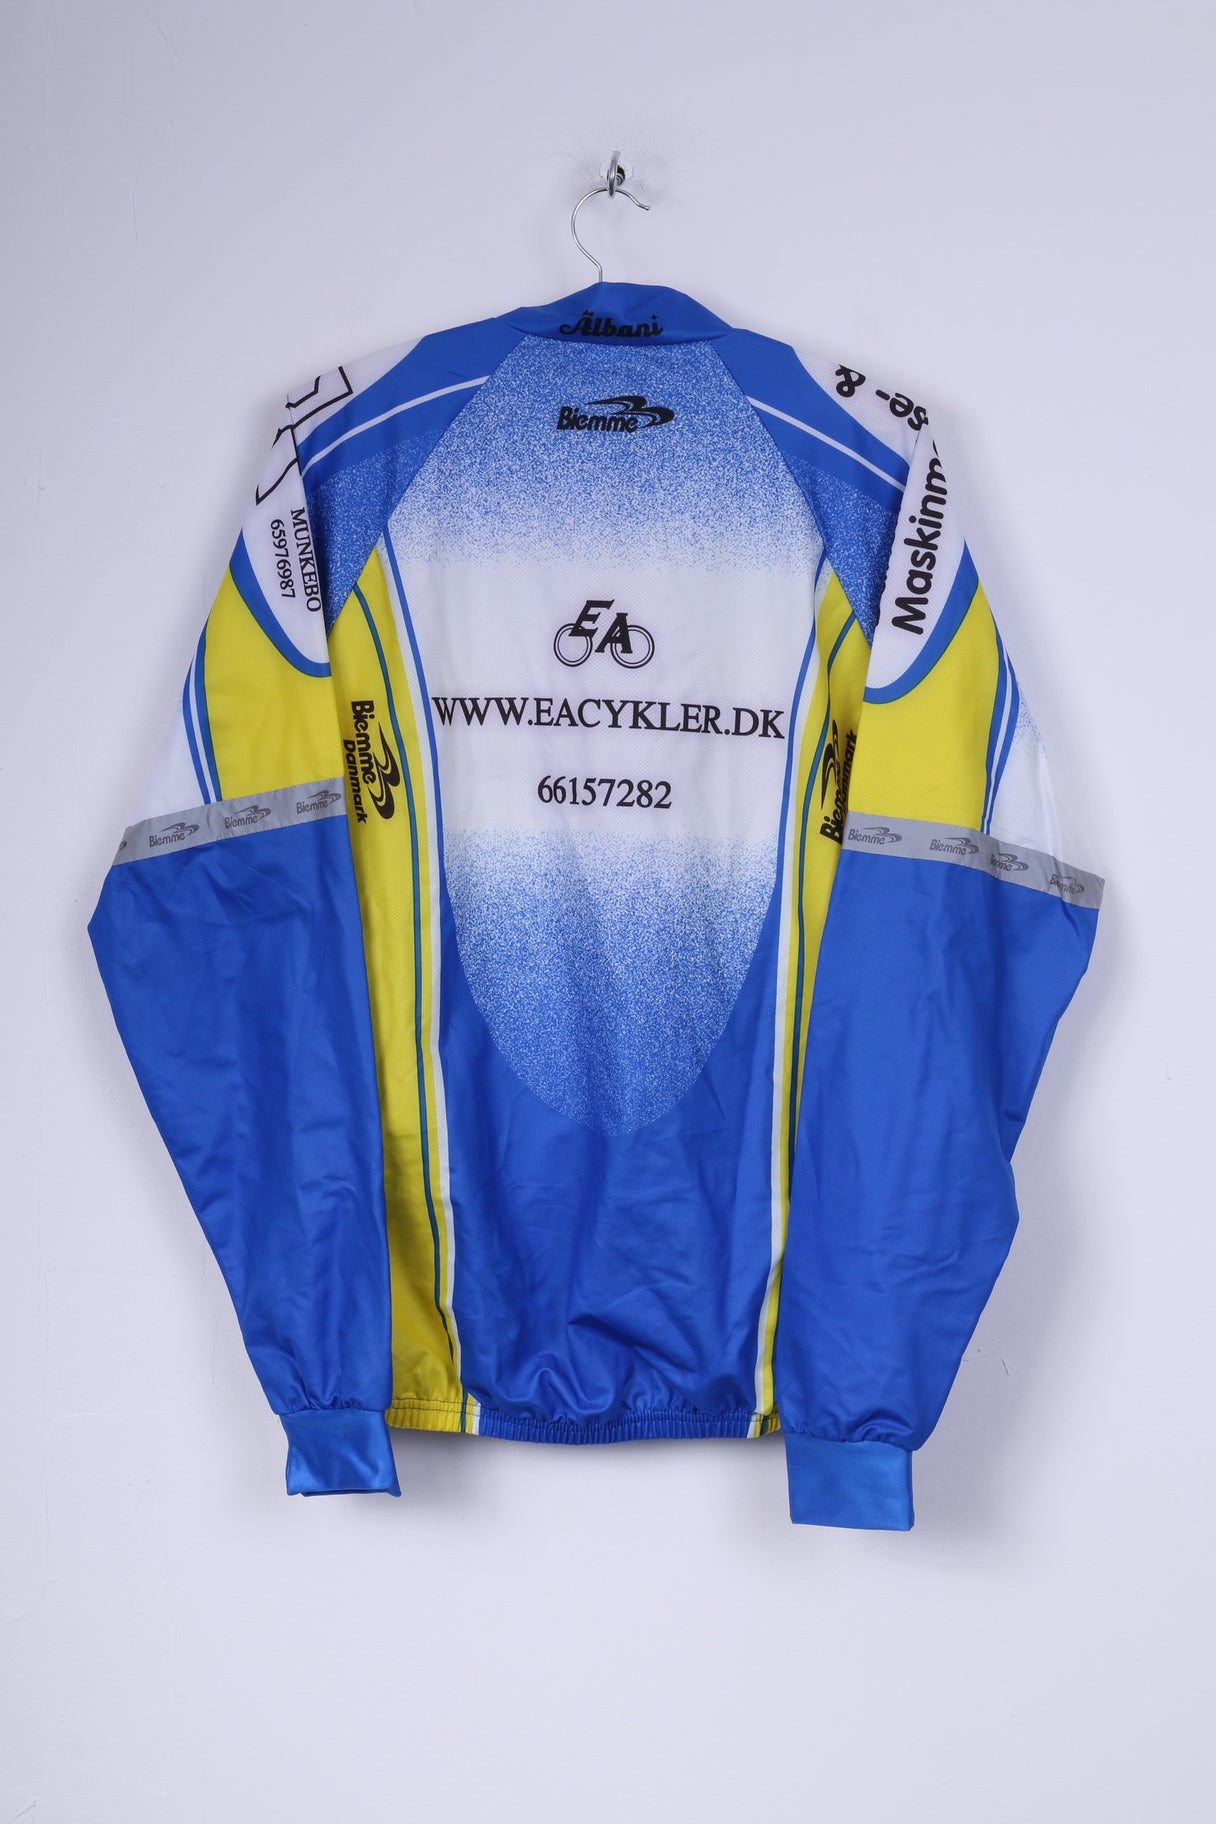 Biemme Mens XL Bike Jacket Blue Zip Up Lightweight Cycling Top